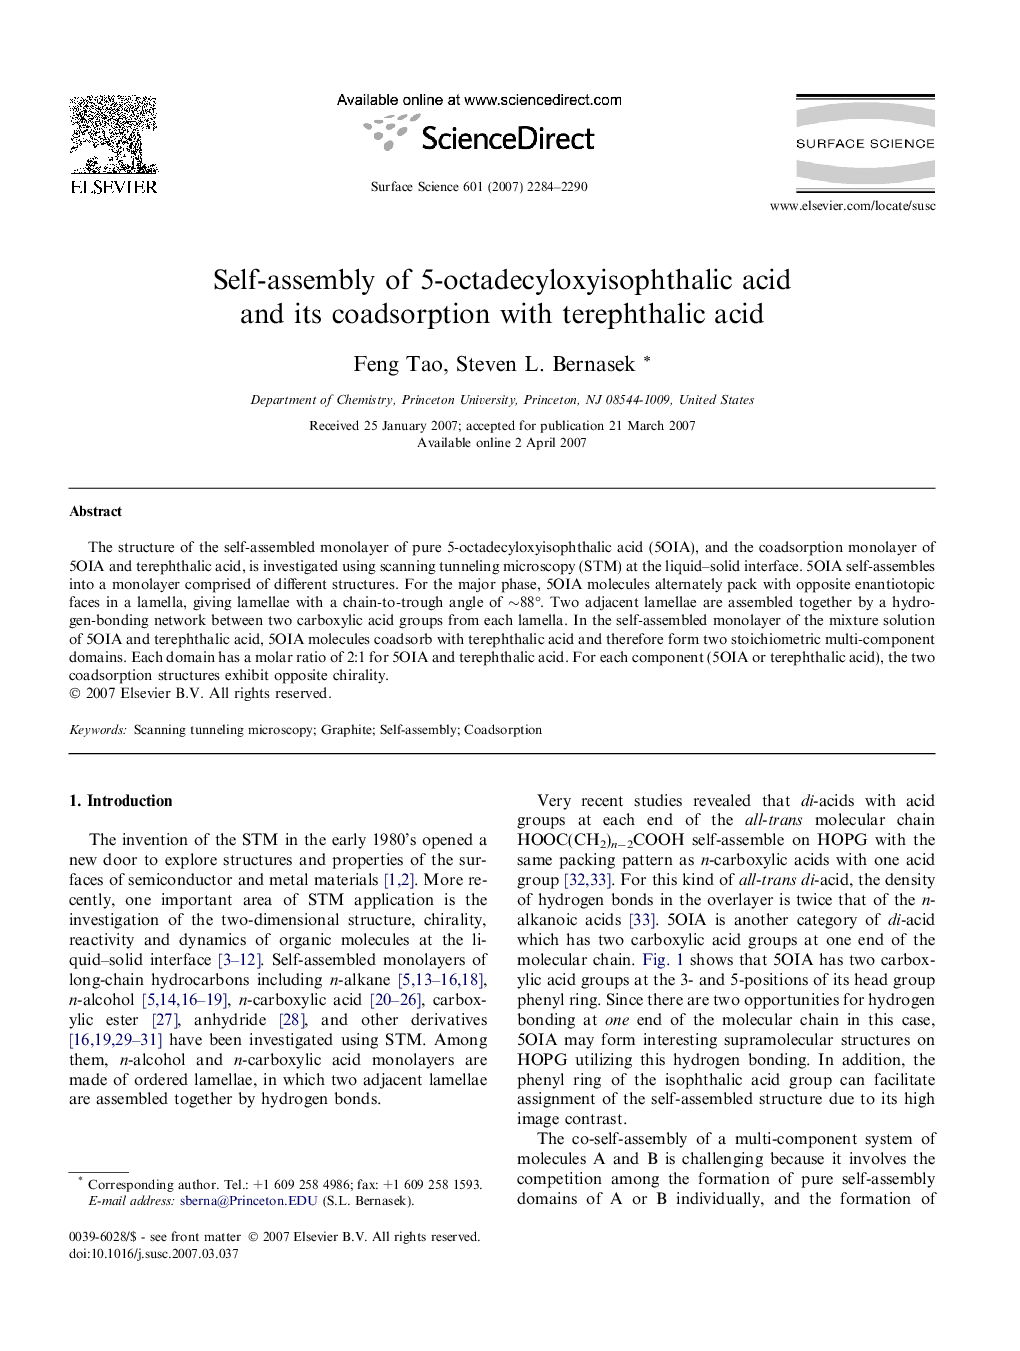 Self-assembly of 5-octadecyloxyisophthalic acid and its coadsorption with terephthalic acid